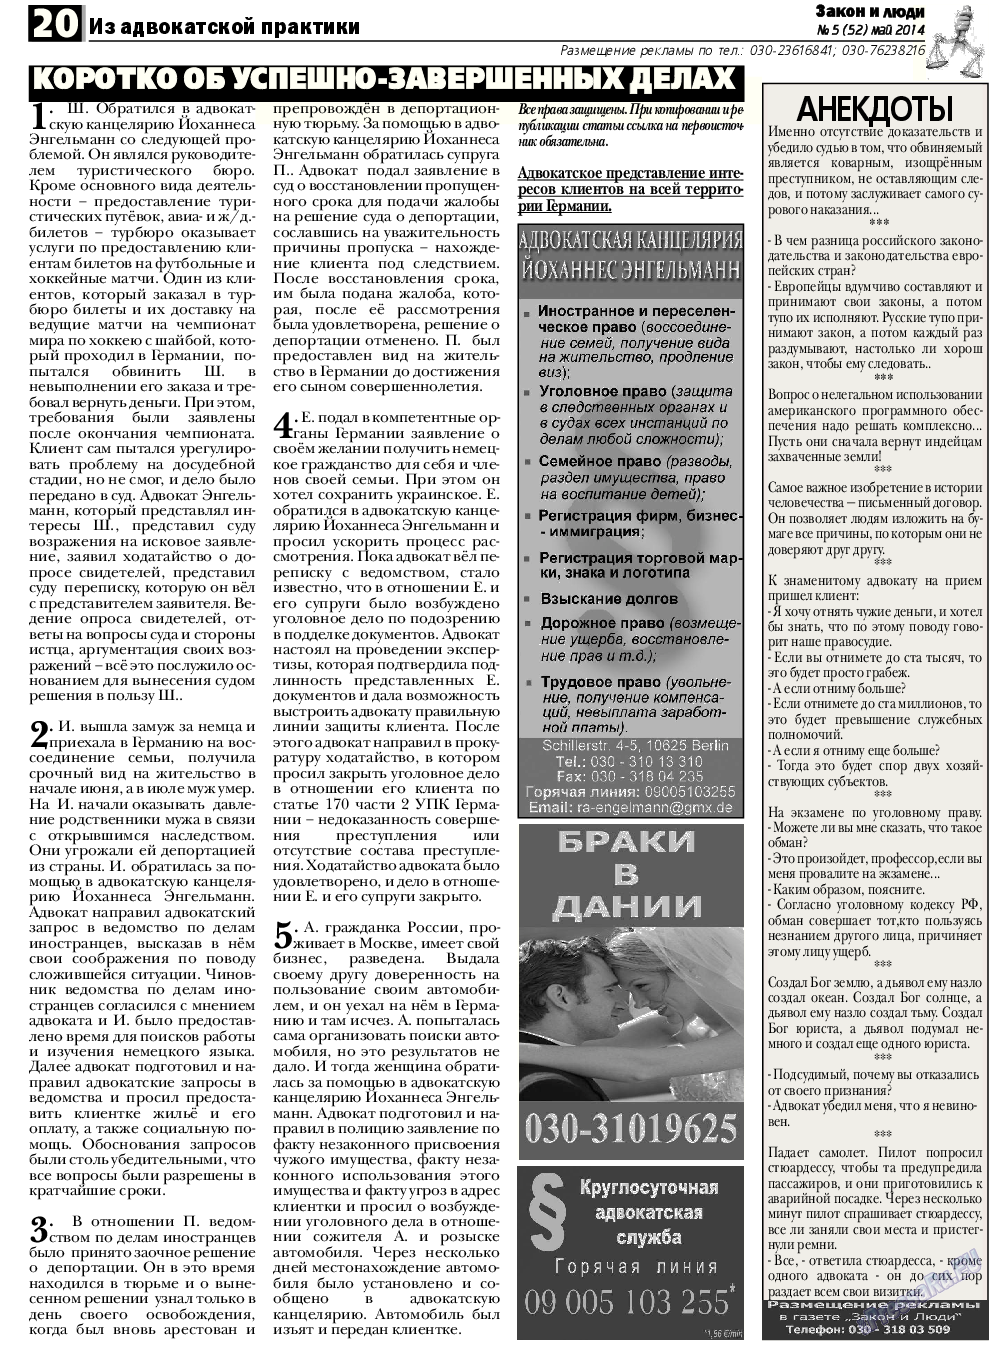 Закон и люди, газета. 2014 №5 стр.20